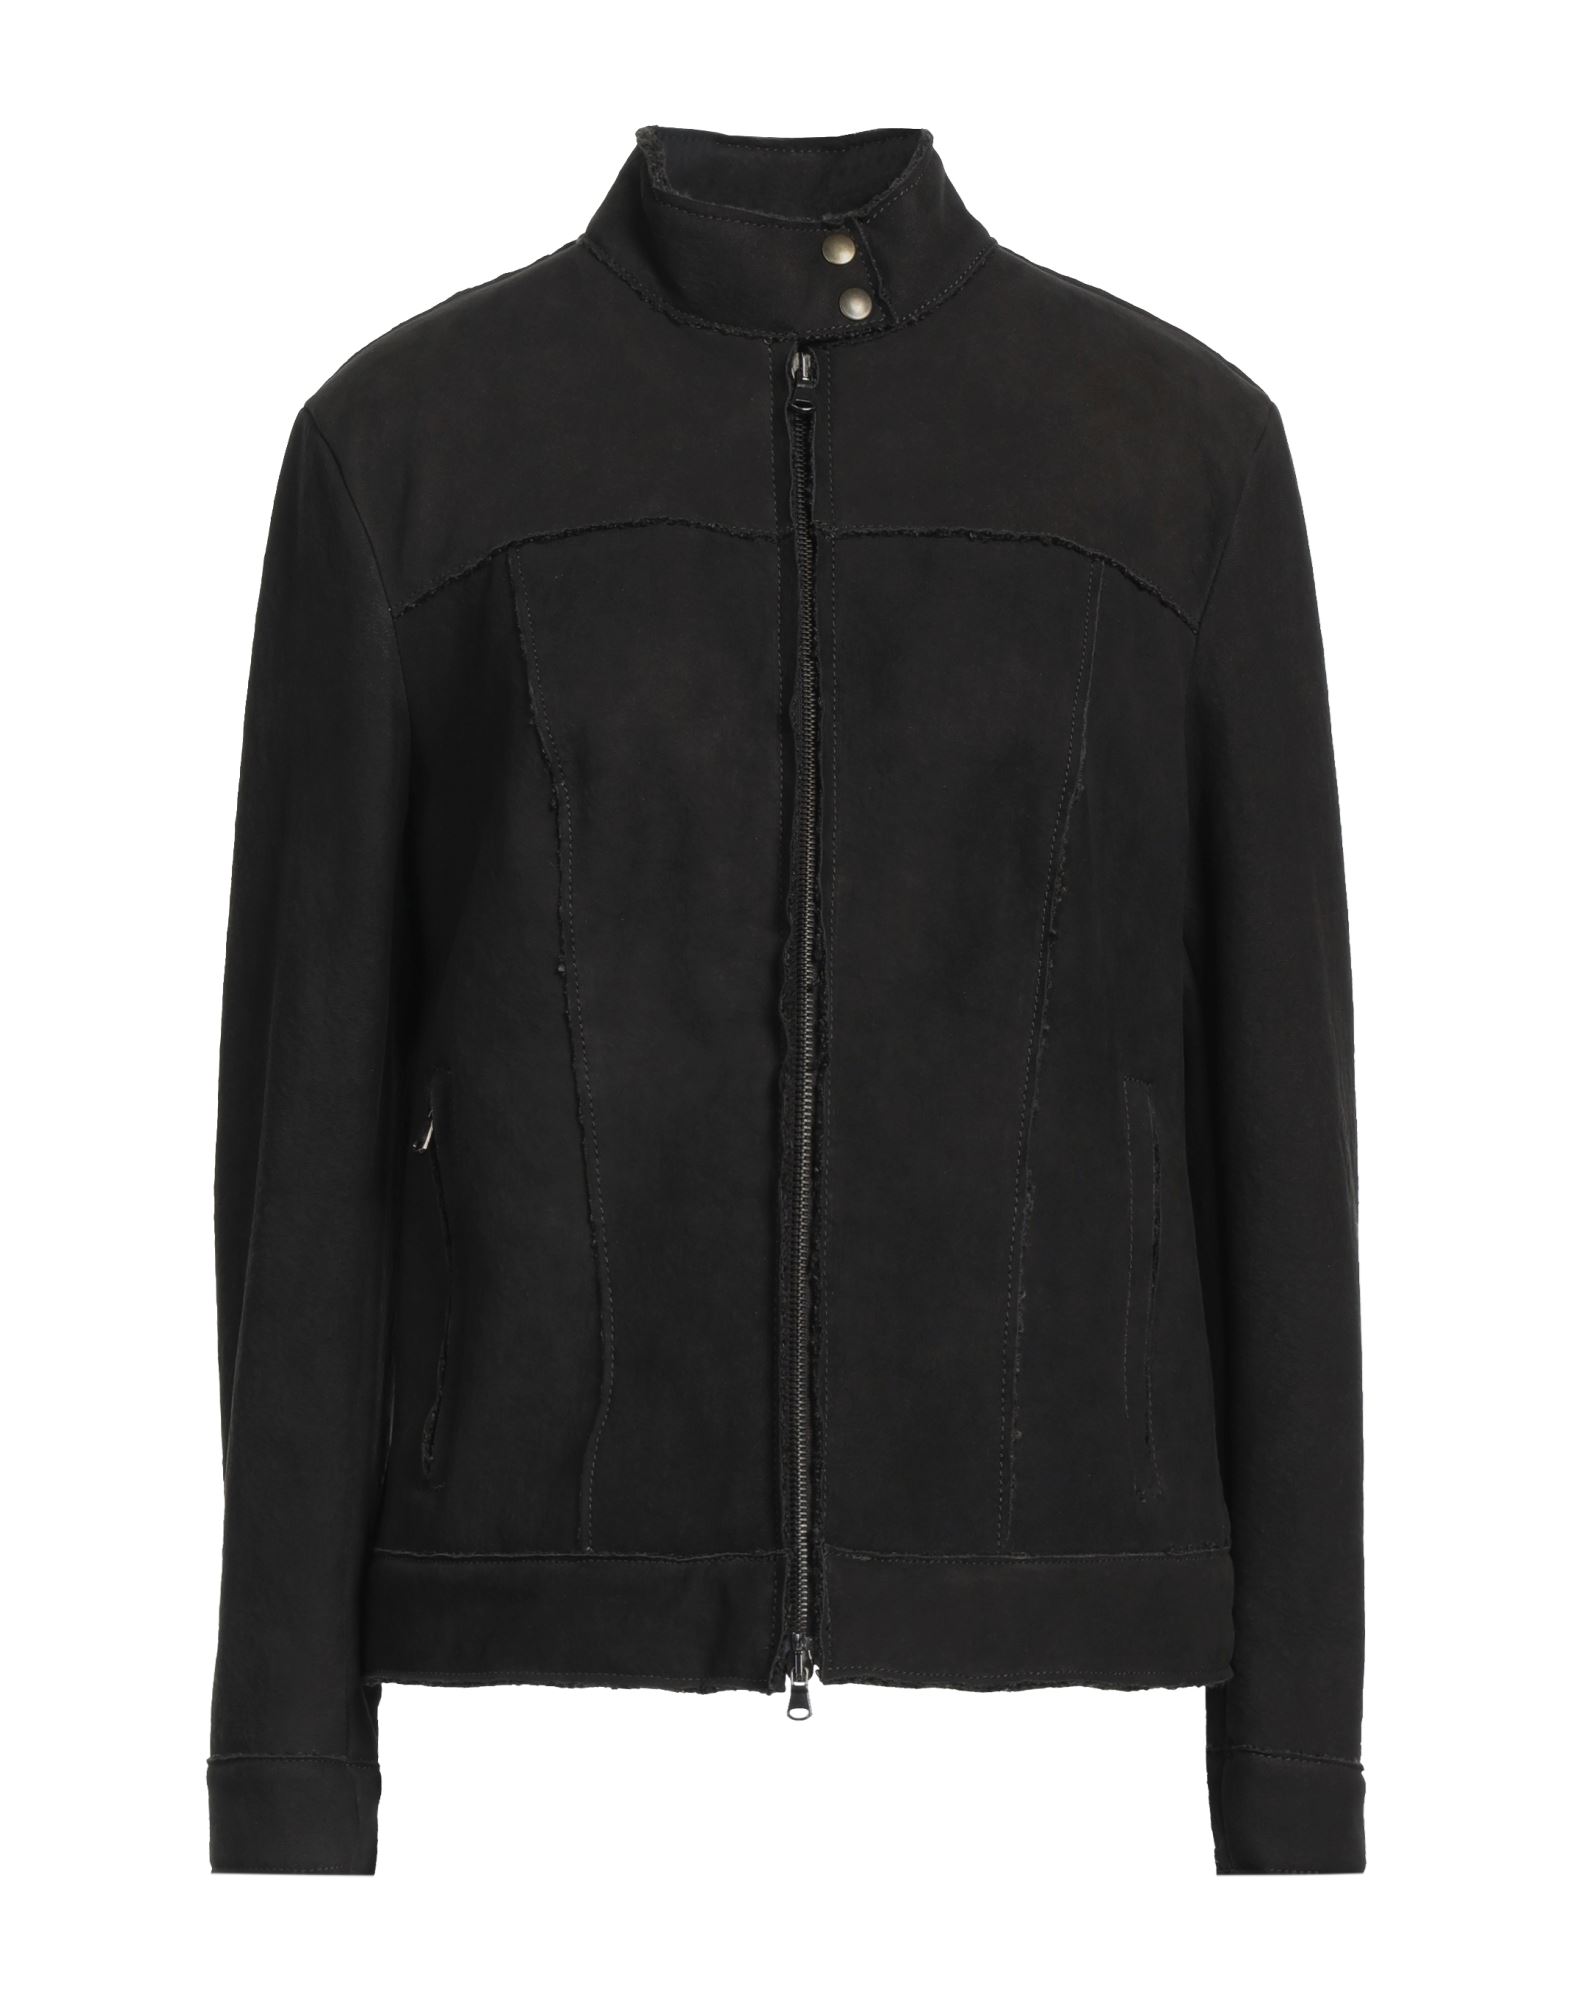 Shop Salvatore Santoro Woman Jacket Dark Brown Size 8 Ovine Leather